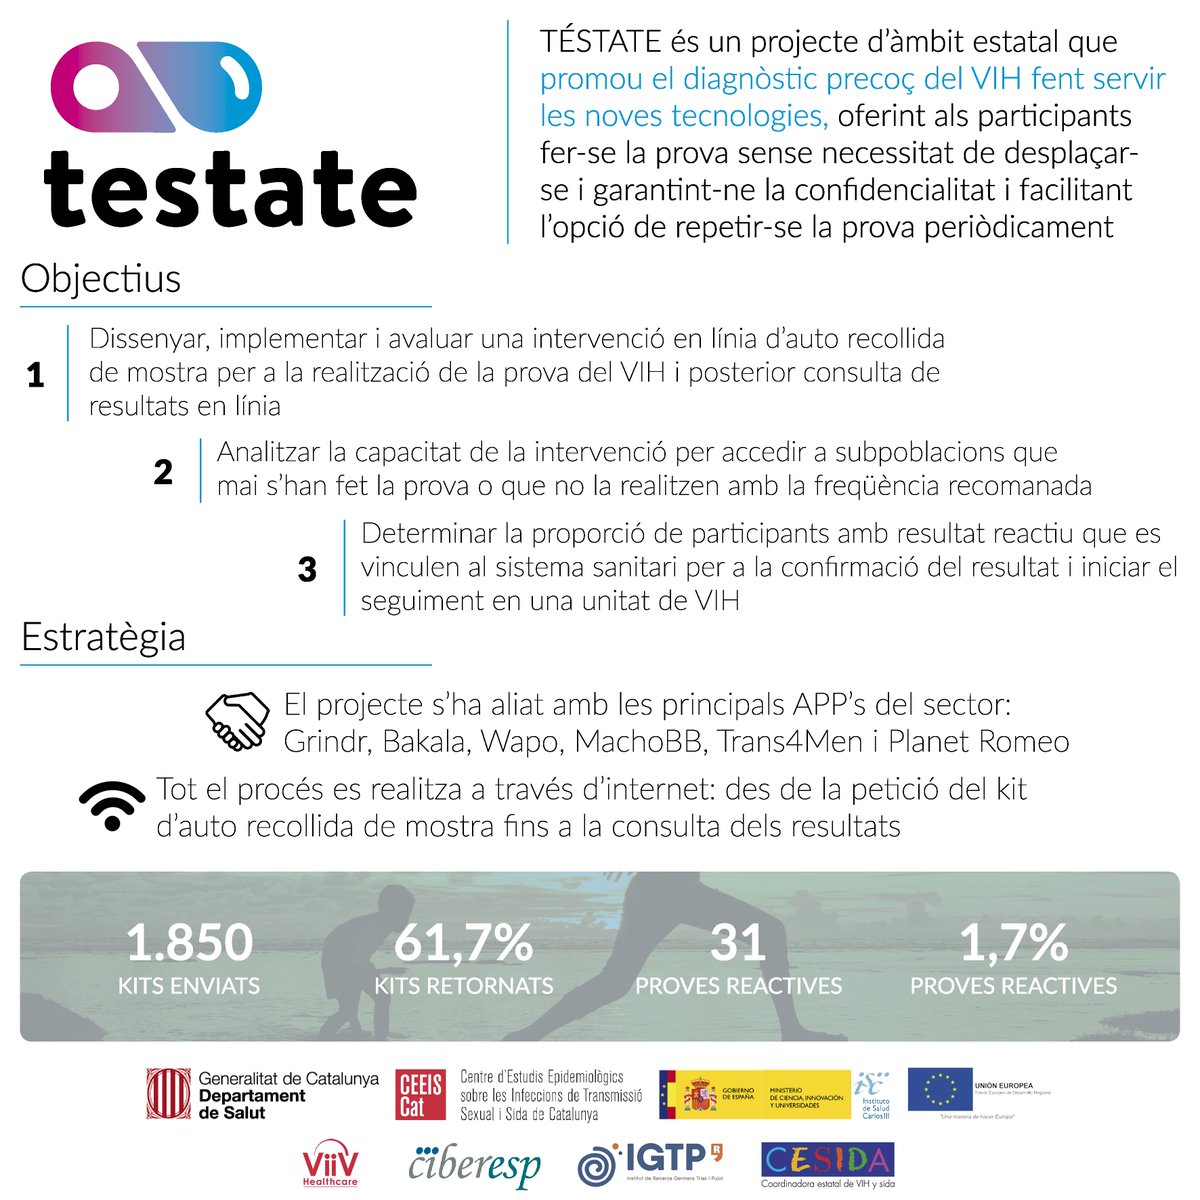 #TÉSTATE és un projecte d’àmbit estatal que promou el diagnòstic precoç del #VIH fent servir les #novestecnologies, oferint als participants fer-se la #prova sense necessitat de desplaçar-se i garantint-ne la confidencialitat #EuroTestWeek #TestTreatPrevent #projectesCEEISCAT